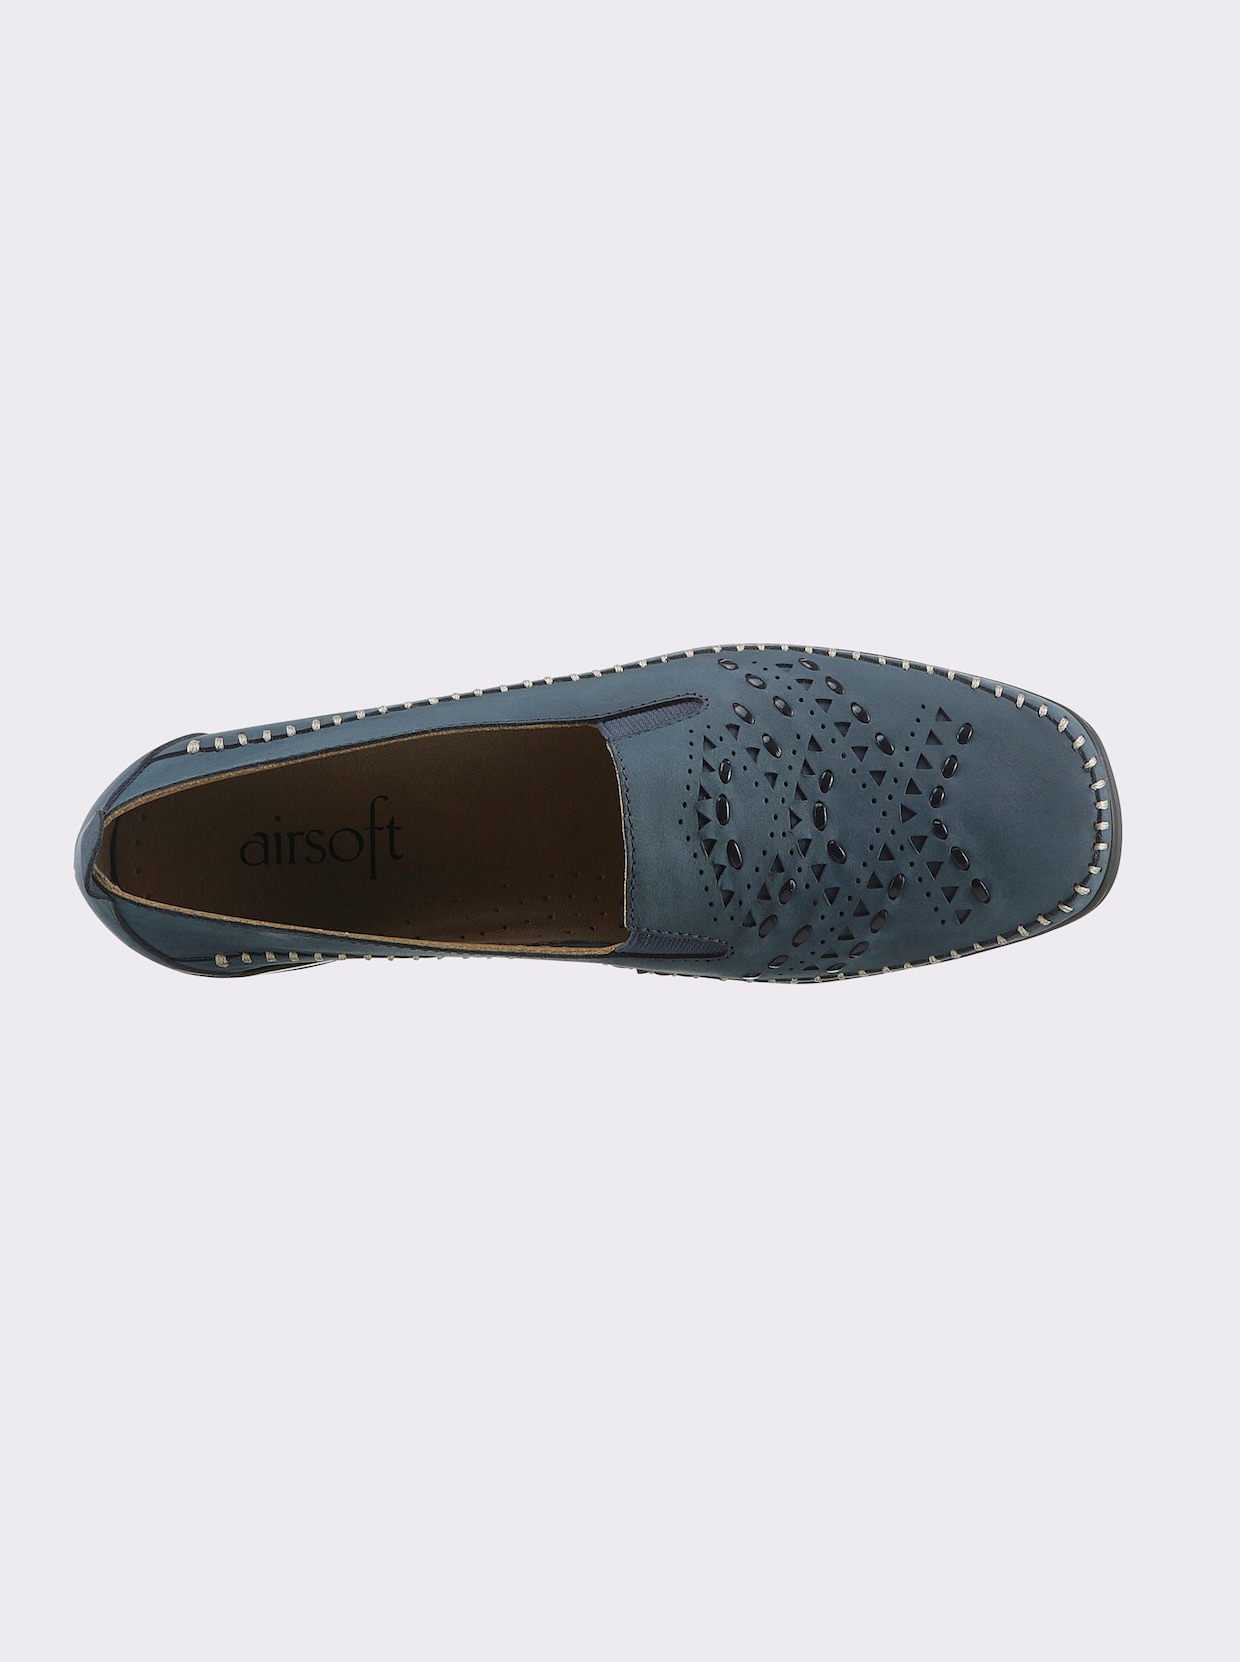 airsoft comfort+ Slipper - jeansblau